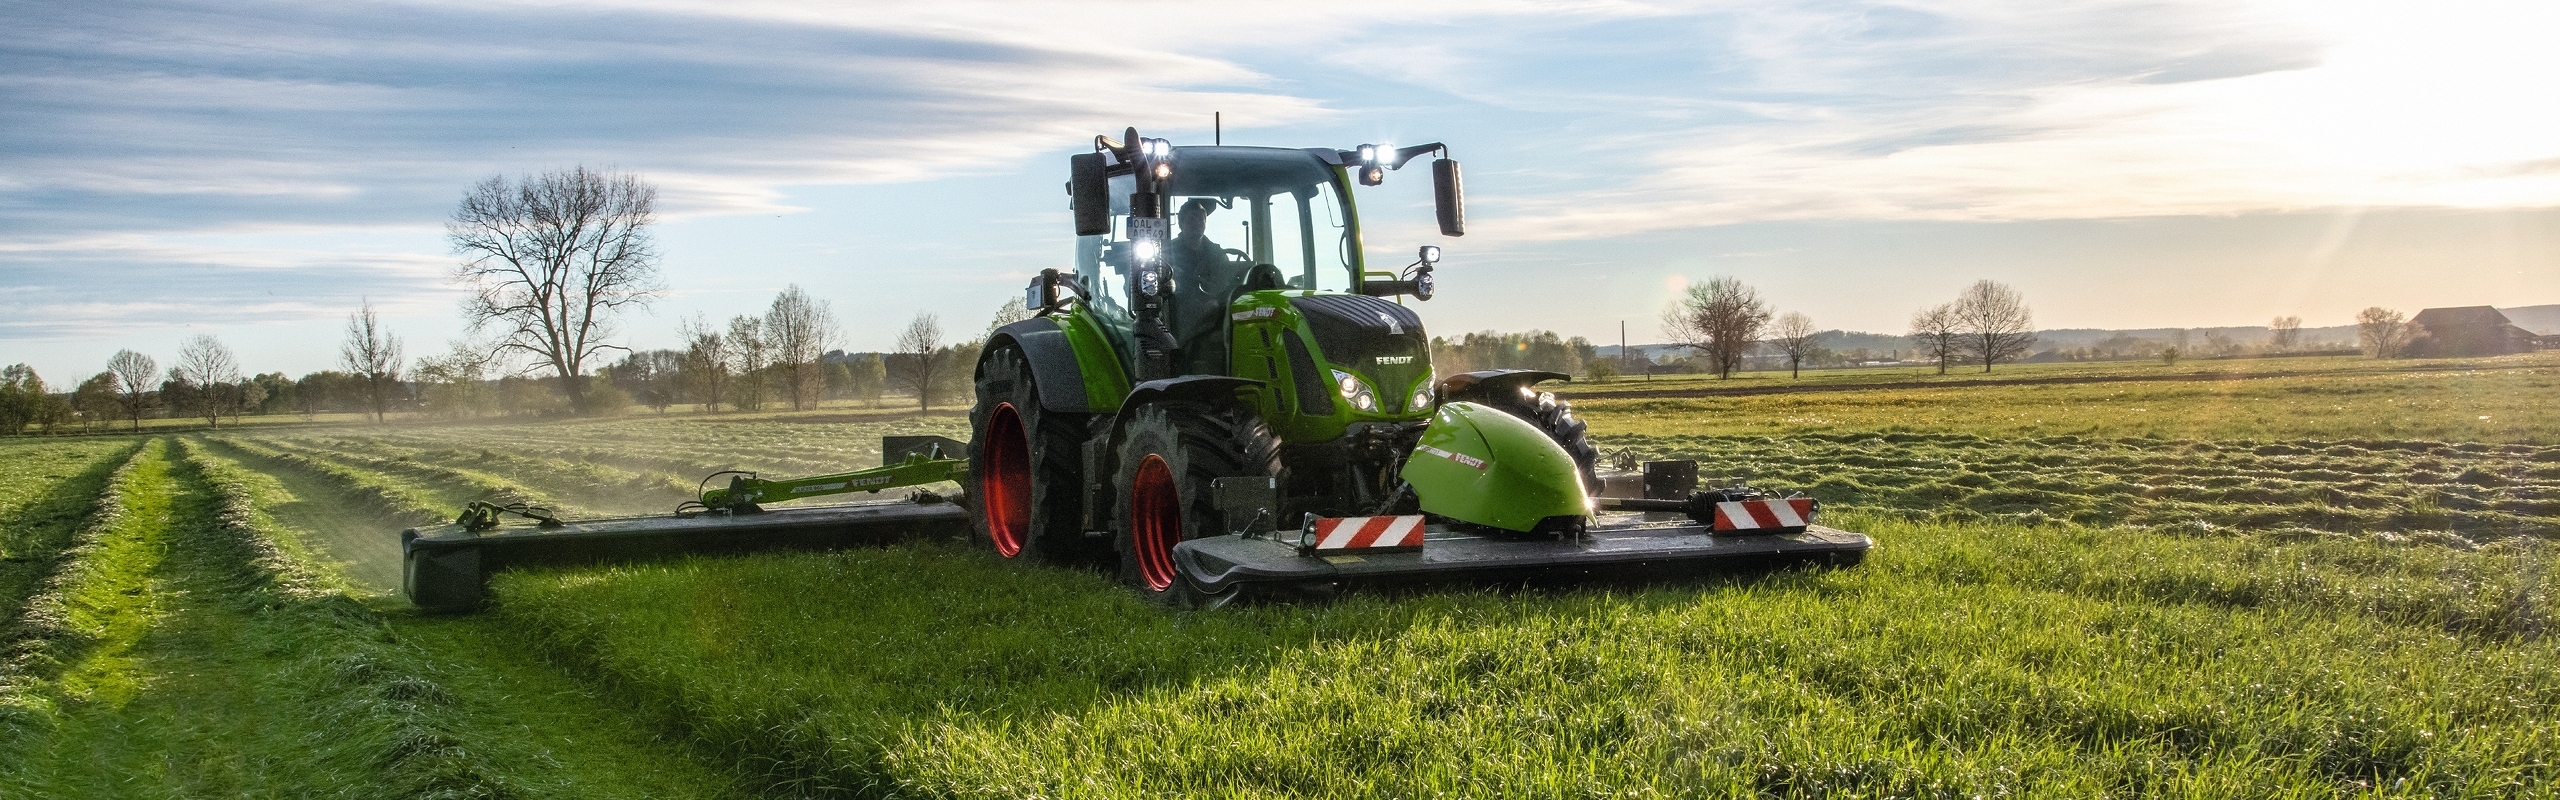 En grøn Fendt Traktor med Slicer slåmaskine under høst i marken